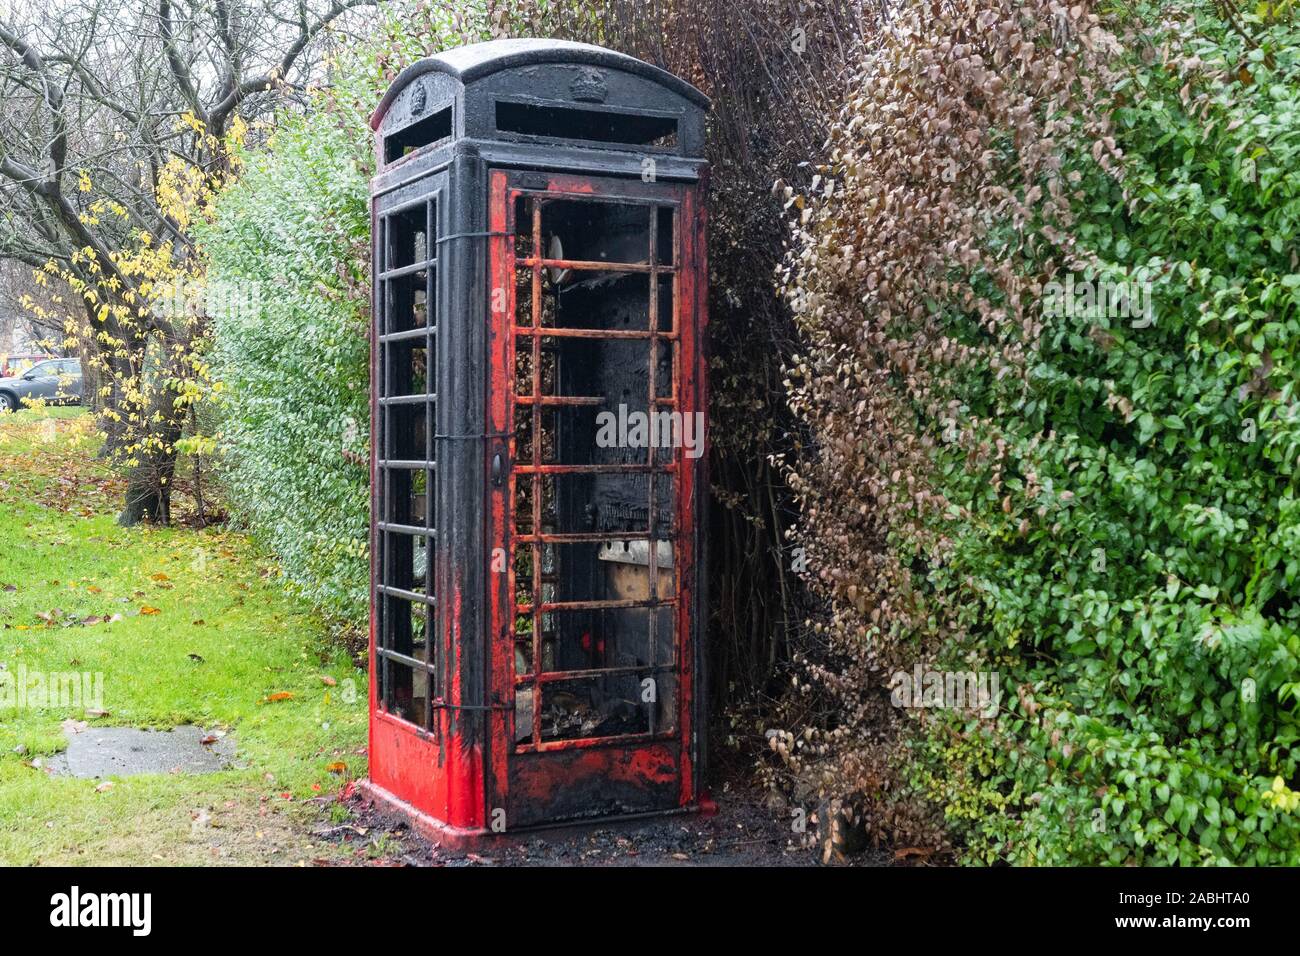 Anti- Sozialverhalten - Ausgebrannt rote Telefonzelle in der South Yorkshire Dorf Barnburgh, die wie ein Dorf Bibliothek verwendet wurde Stockfoto